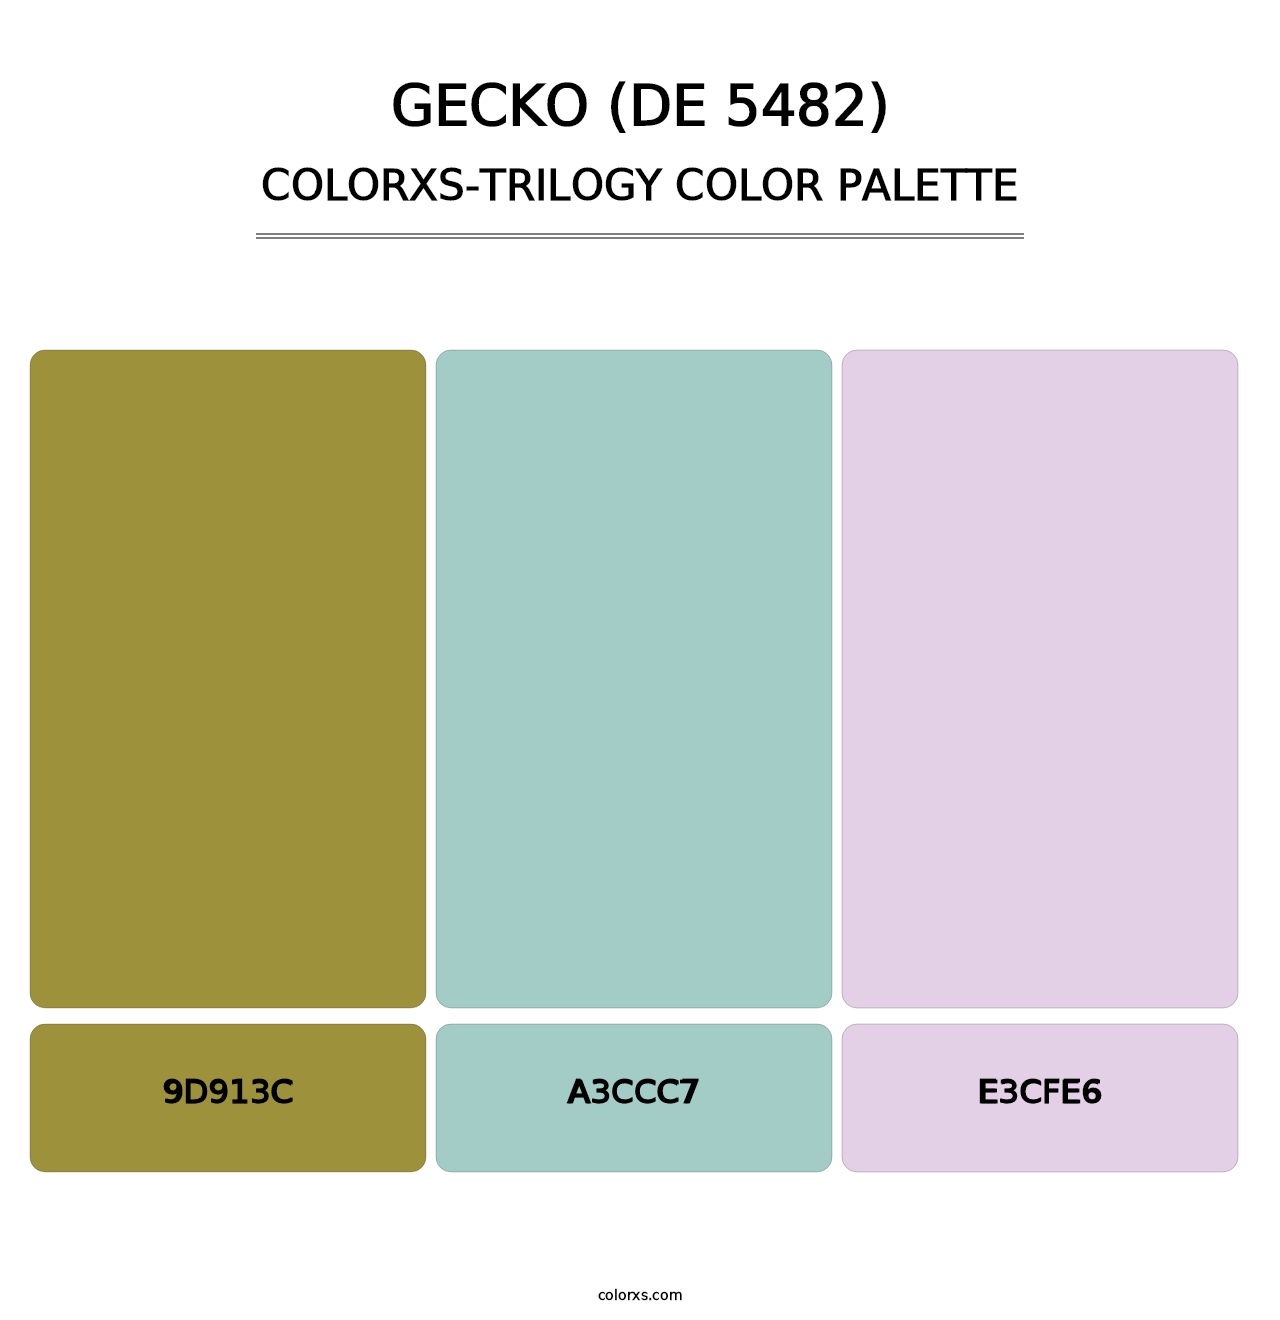 Gecko (DE 5482) - Colorxs Trilogy Palette